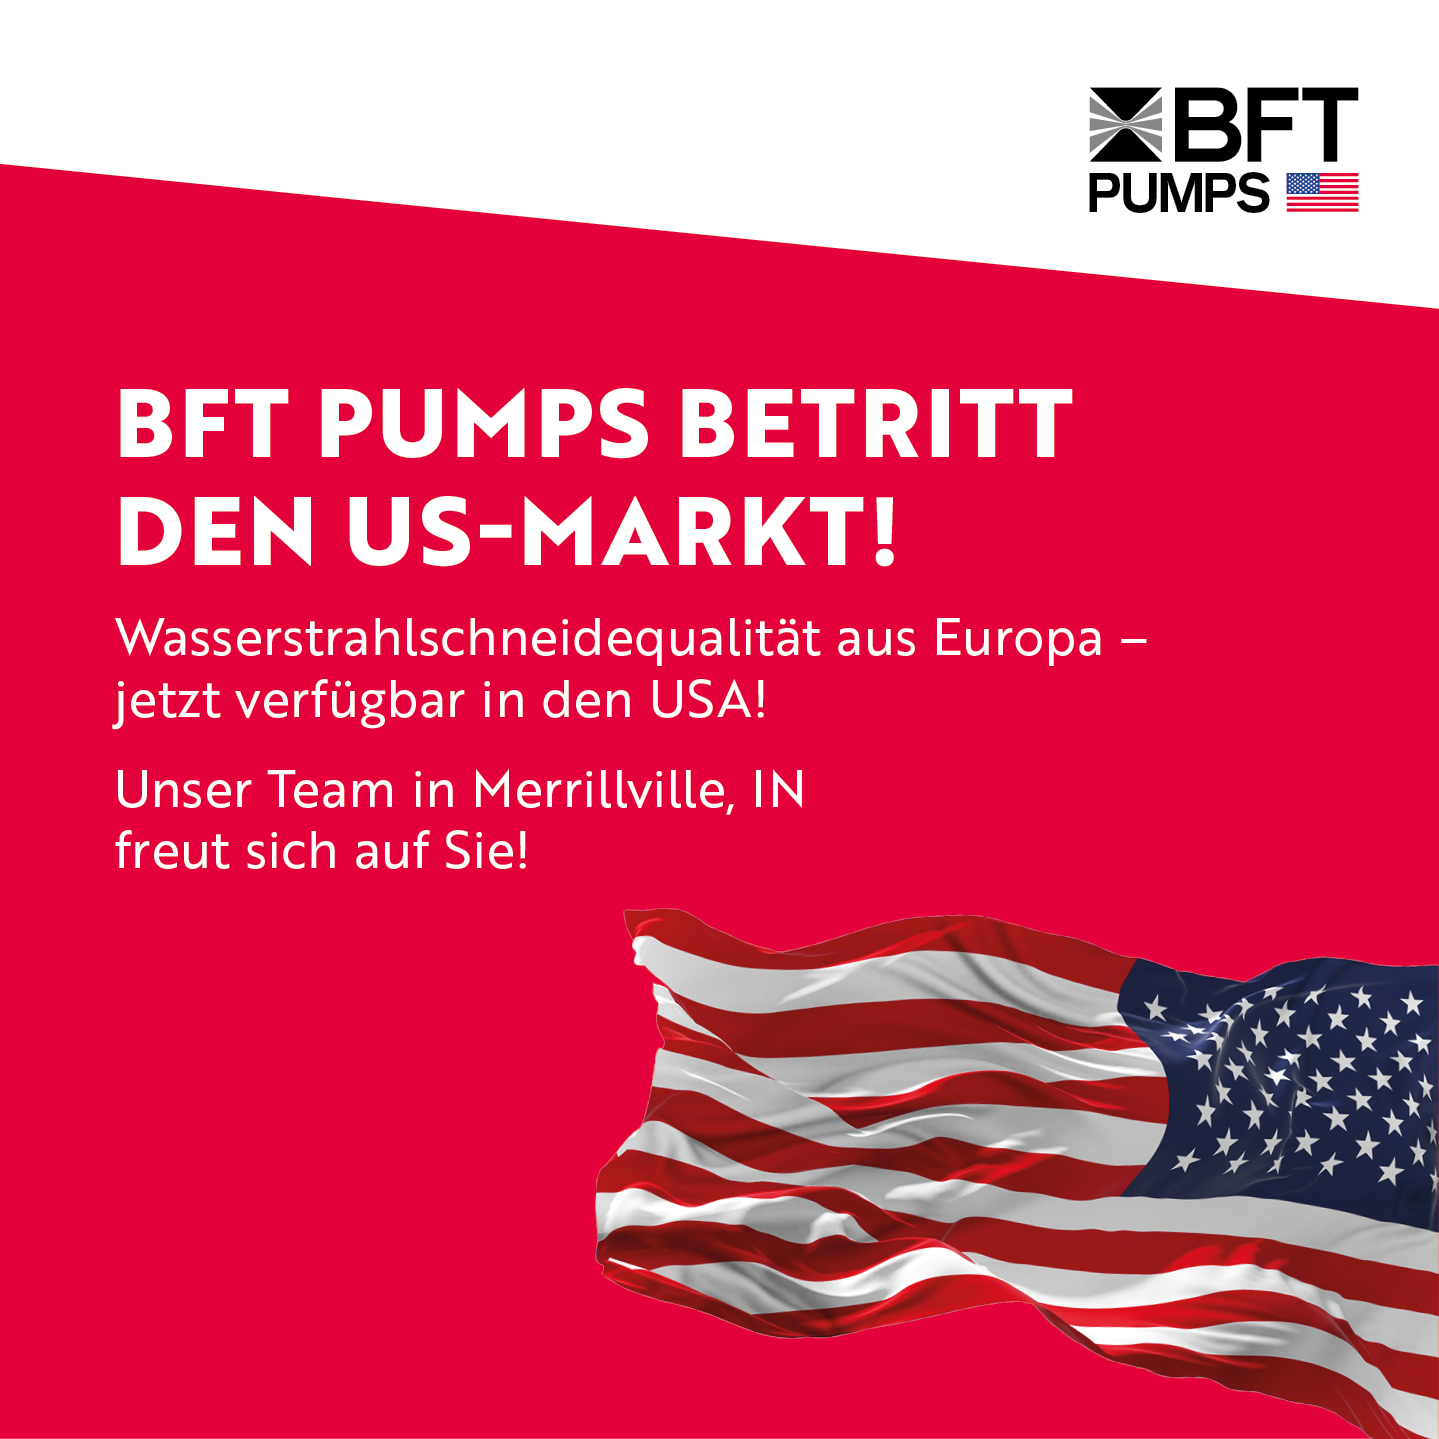 BFT Pumps wagt sich in den US-Markt vor